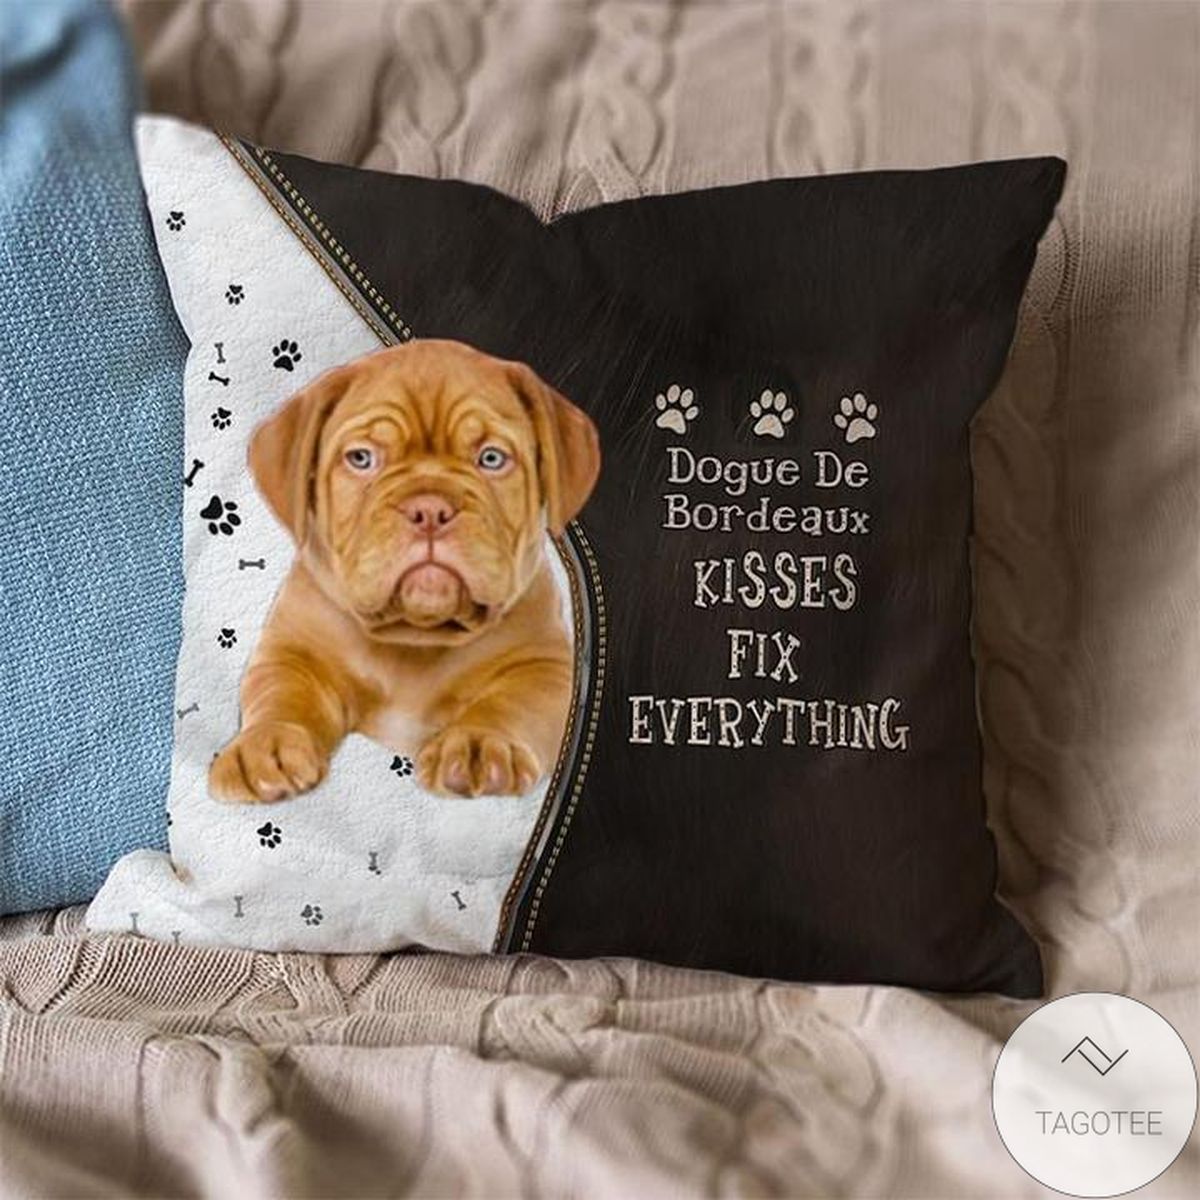 Dogue De Bordeaux Kisses Fix Everything Pillowcase